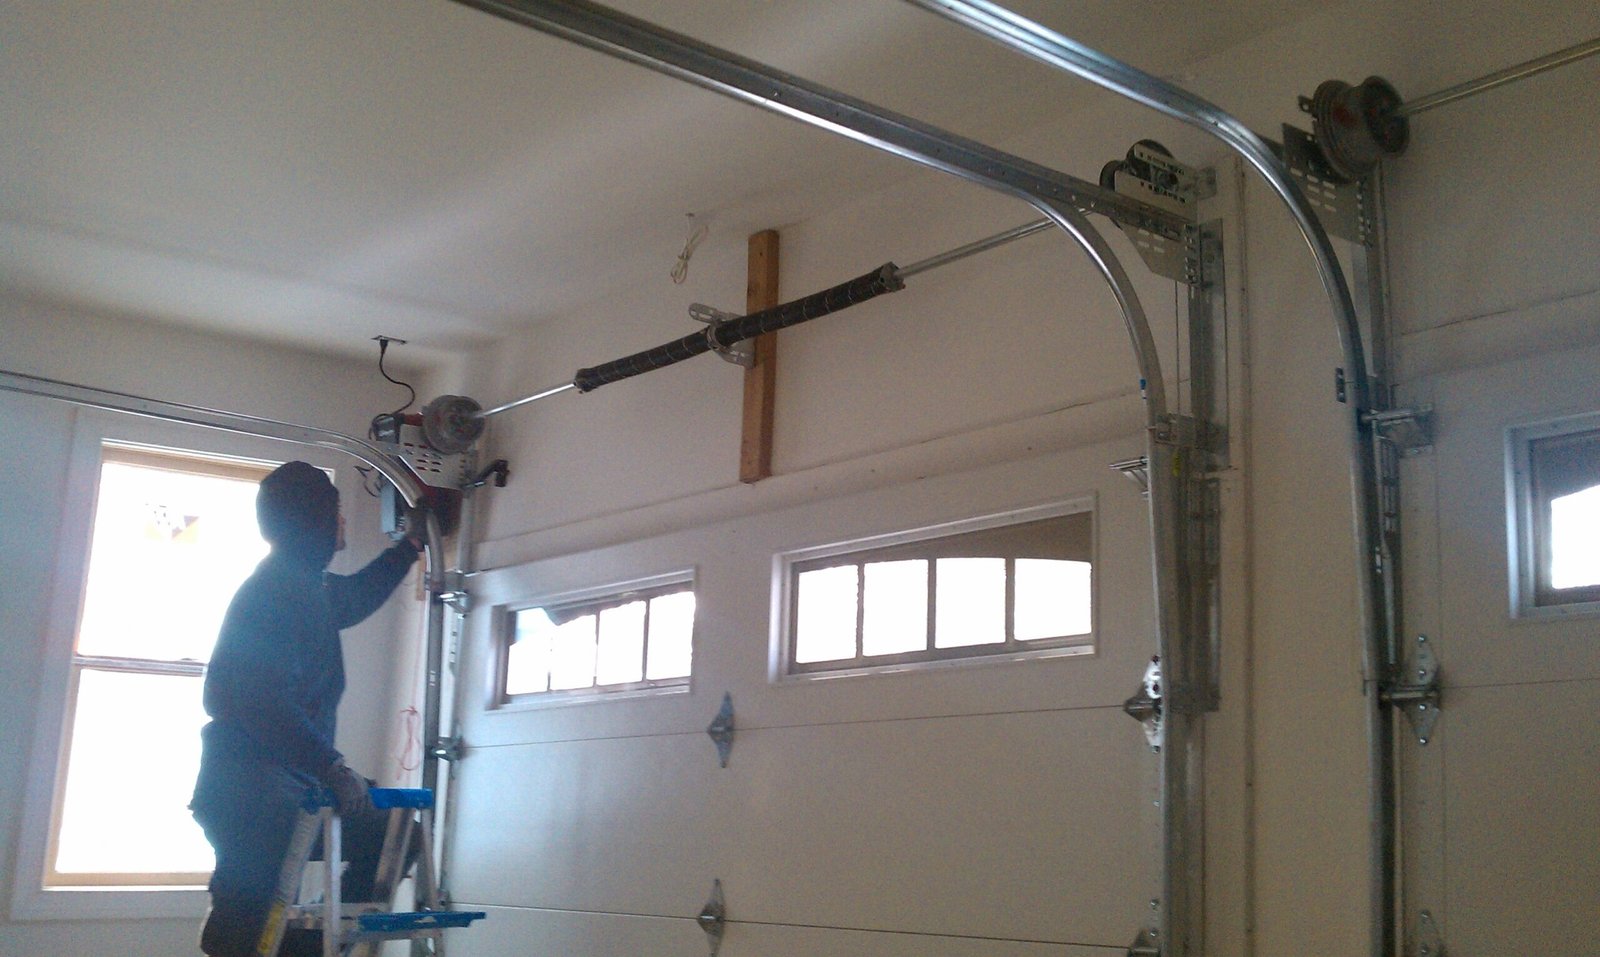 A man repairs garage door